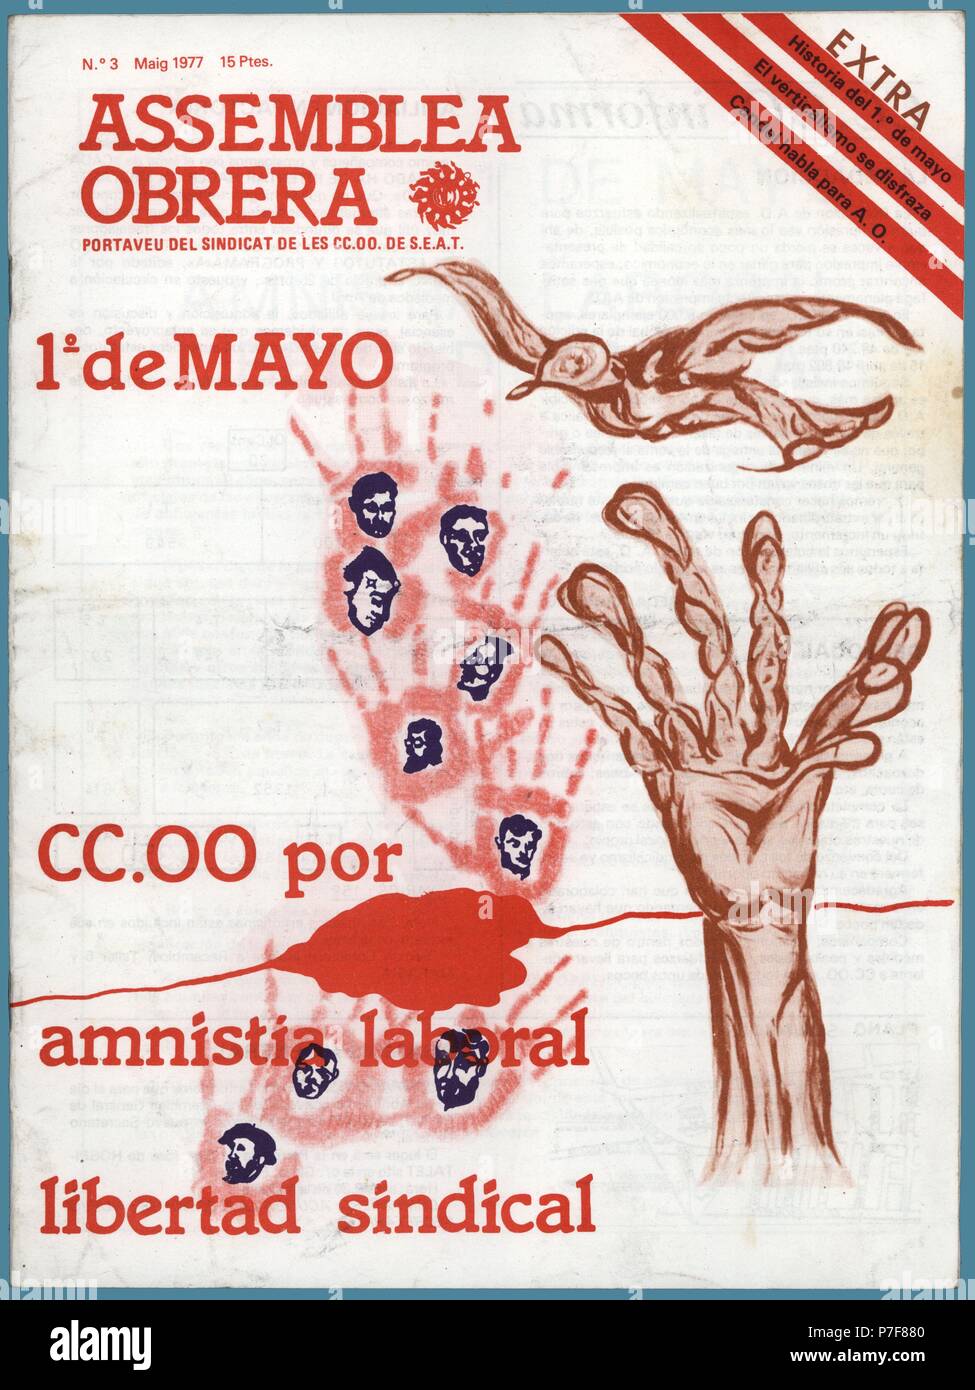 Portada de la revista Assemblea Obrera, portavoz del sindicato de CCOO de SEAT. Barcelona, mayo de 1977. Stock Photo